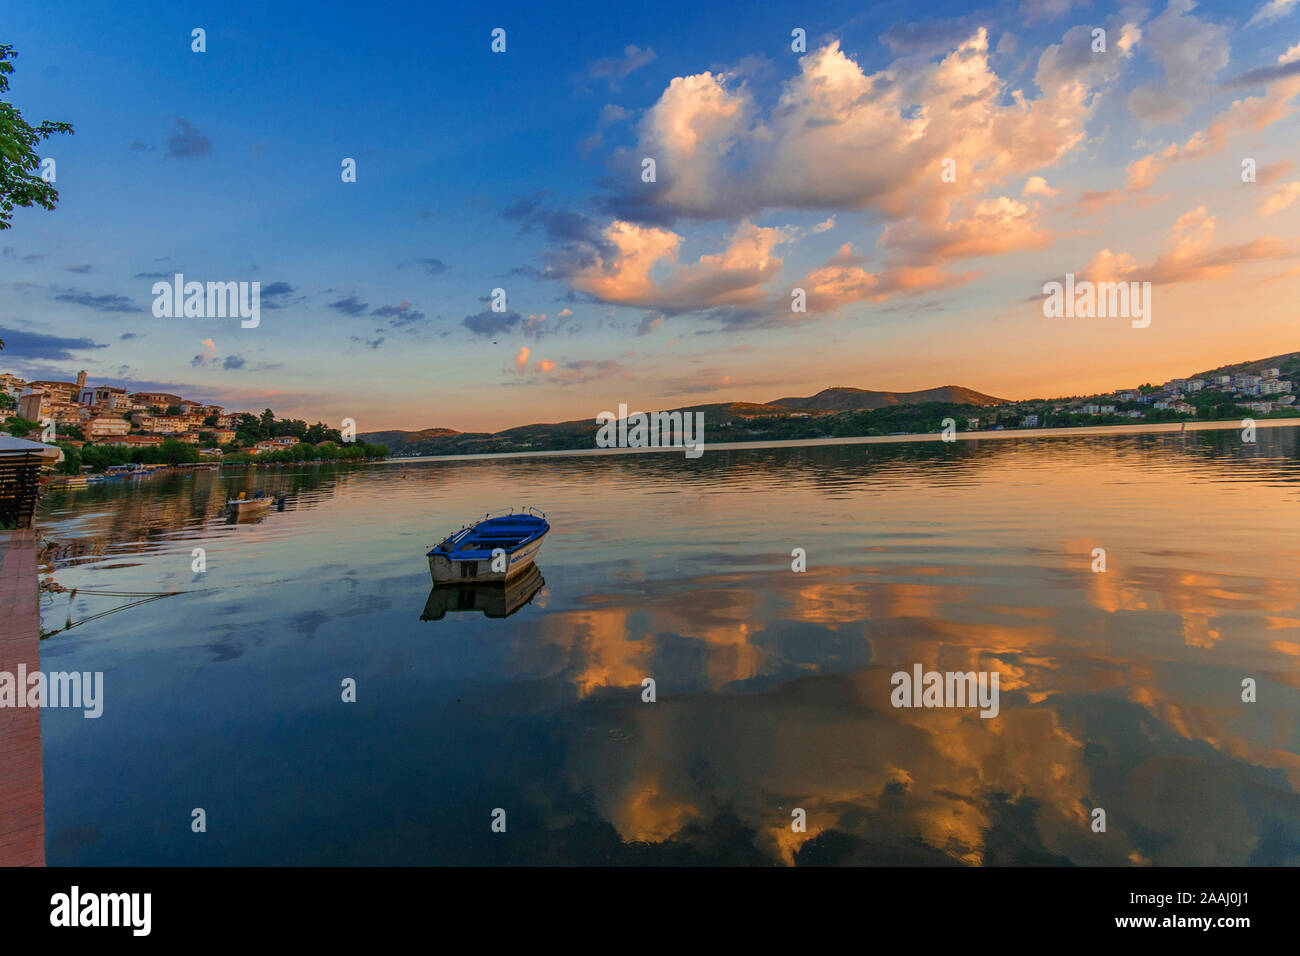 Un bateau flottant paisiblement sur un très calme et silencieux lac au crépuscule à Kastoria, Grèce. Magnifique coucher de soleil couleurs bleu, rose, jaune et orange. Banque D'Images